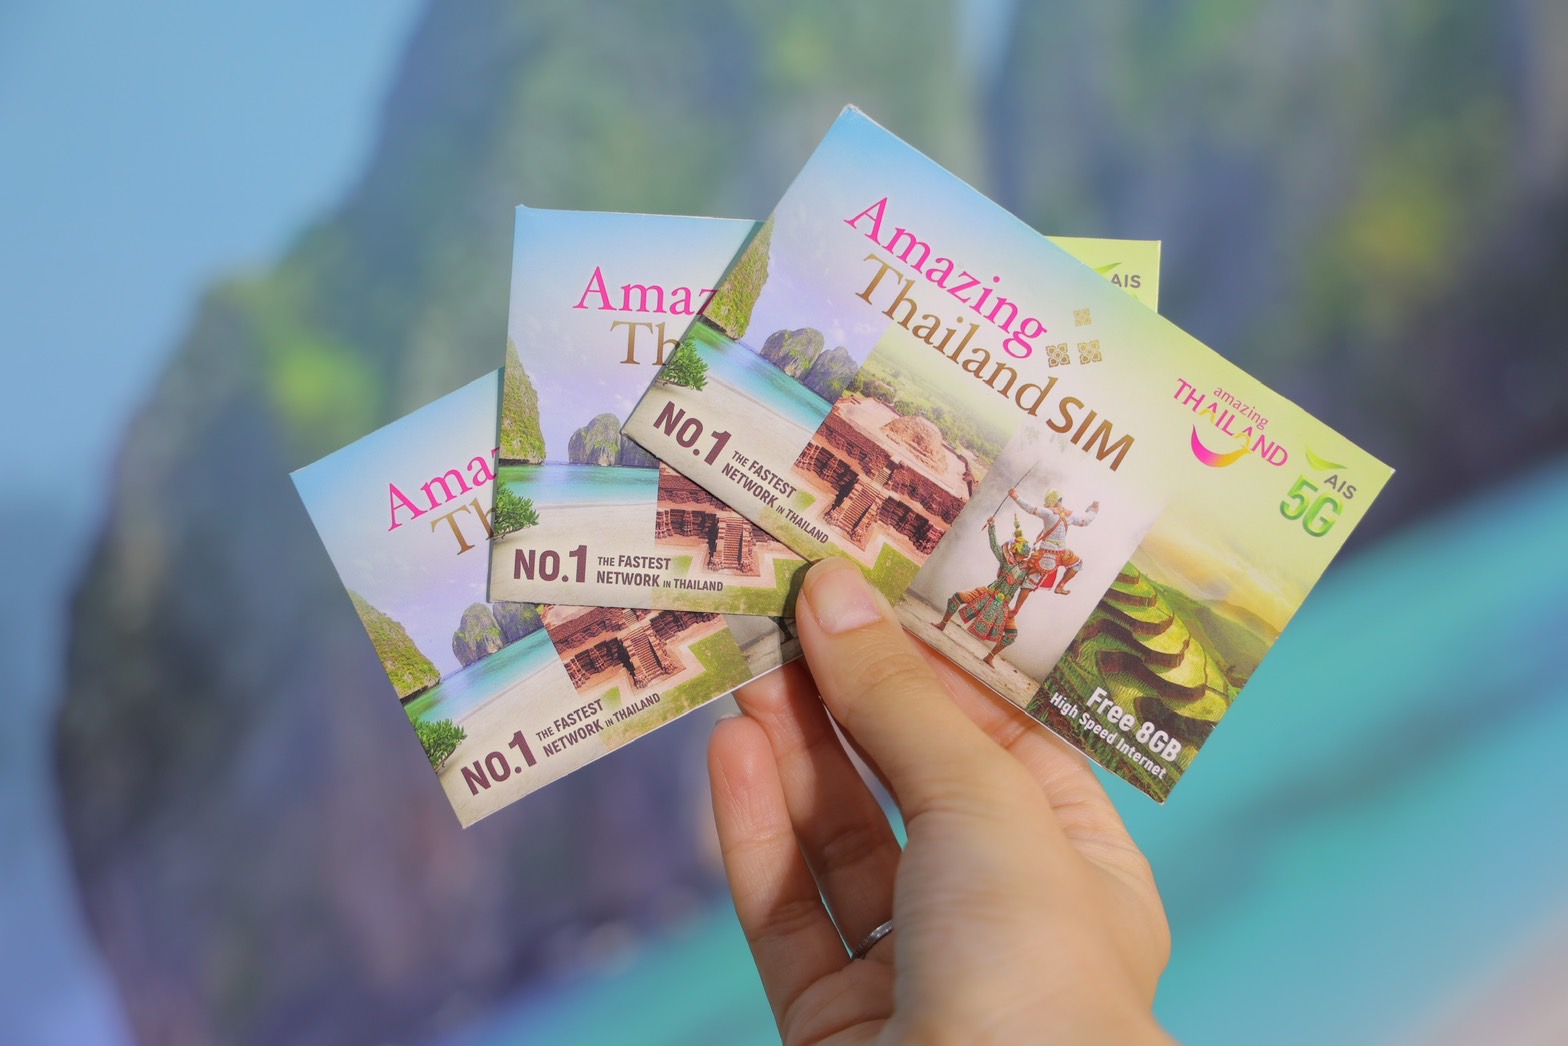 泰国国家旅游局携手AIS_5G，共同推出“回归泰国”活动，以吸引更多国际游客